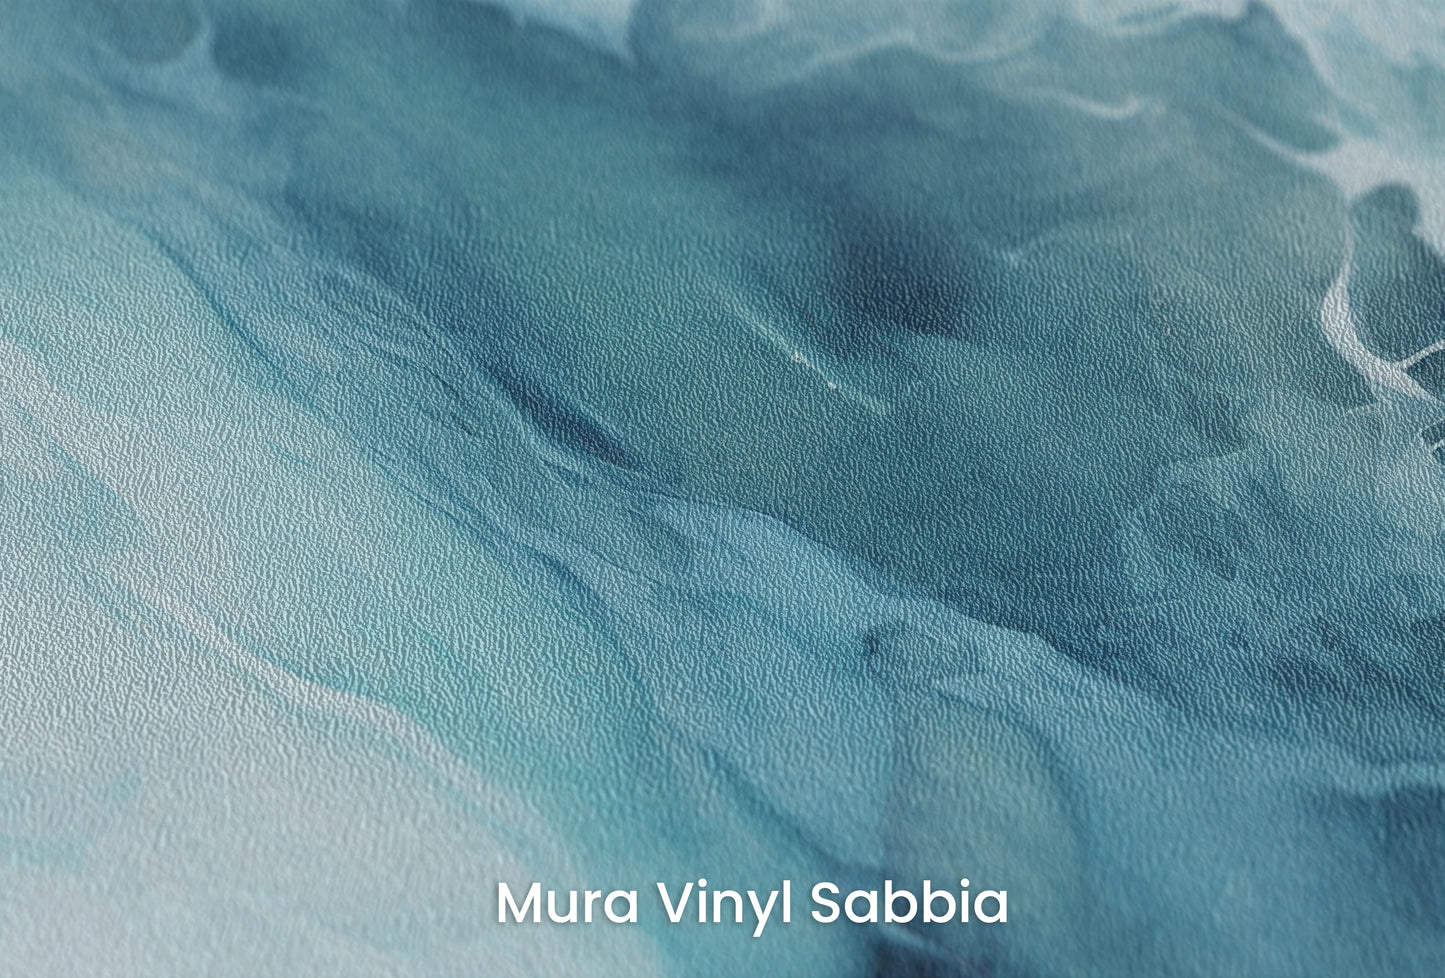 Zbliżenie na artystyczną fototapetę o nazwie Arctic Neptune #2 na podłożu Mura Vinyl Sabbia struktura grubego ziarna piasku.